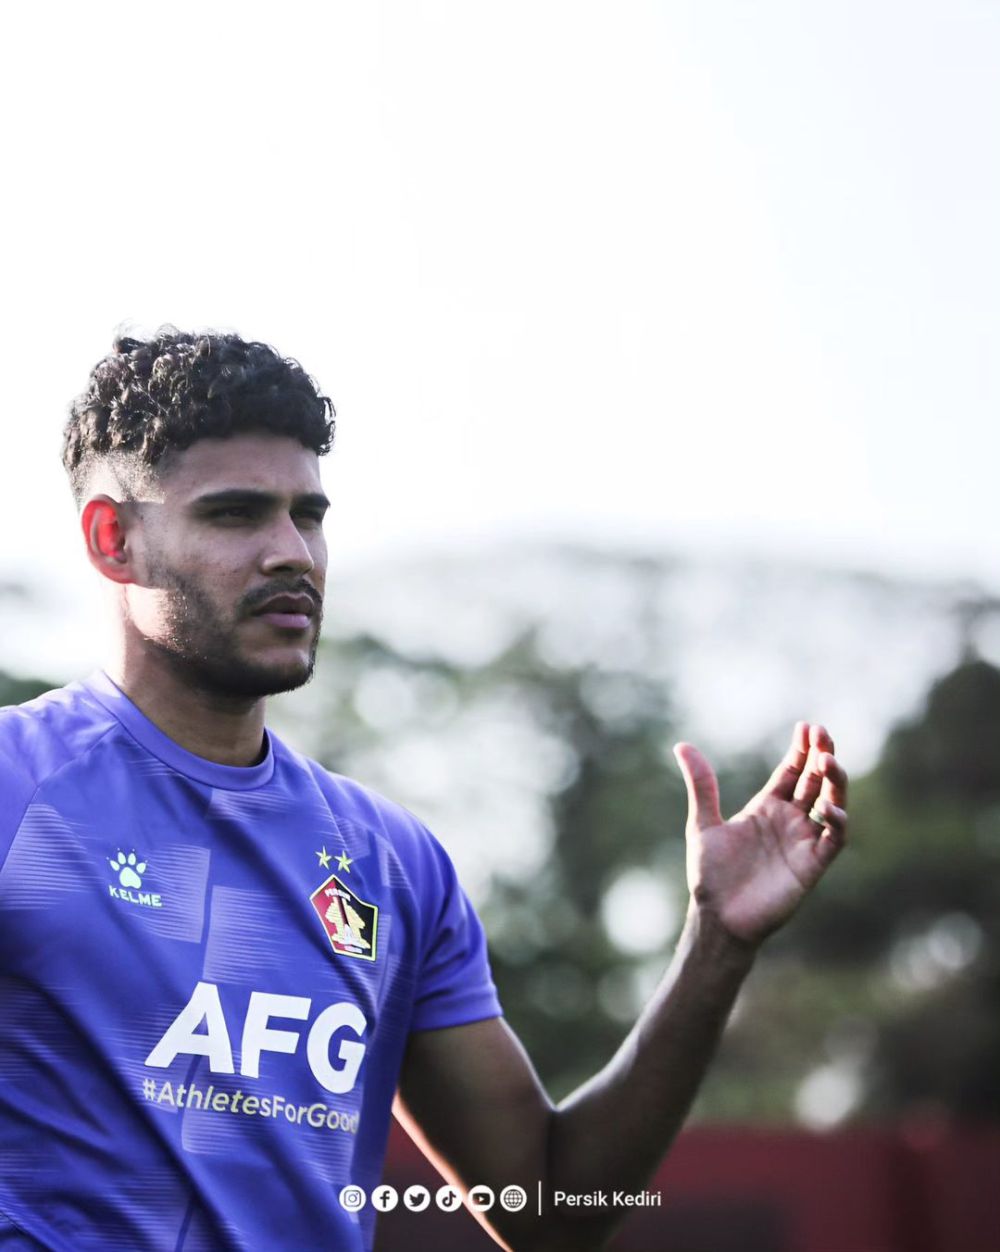 Move On dari Kekalahan, Persik Kediri Siap Lawan Arema FC